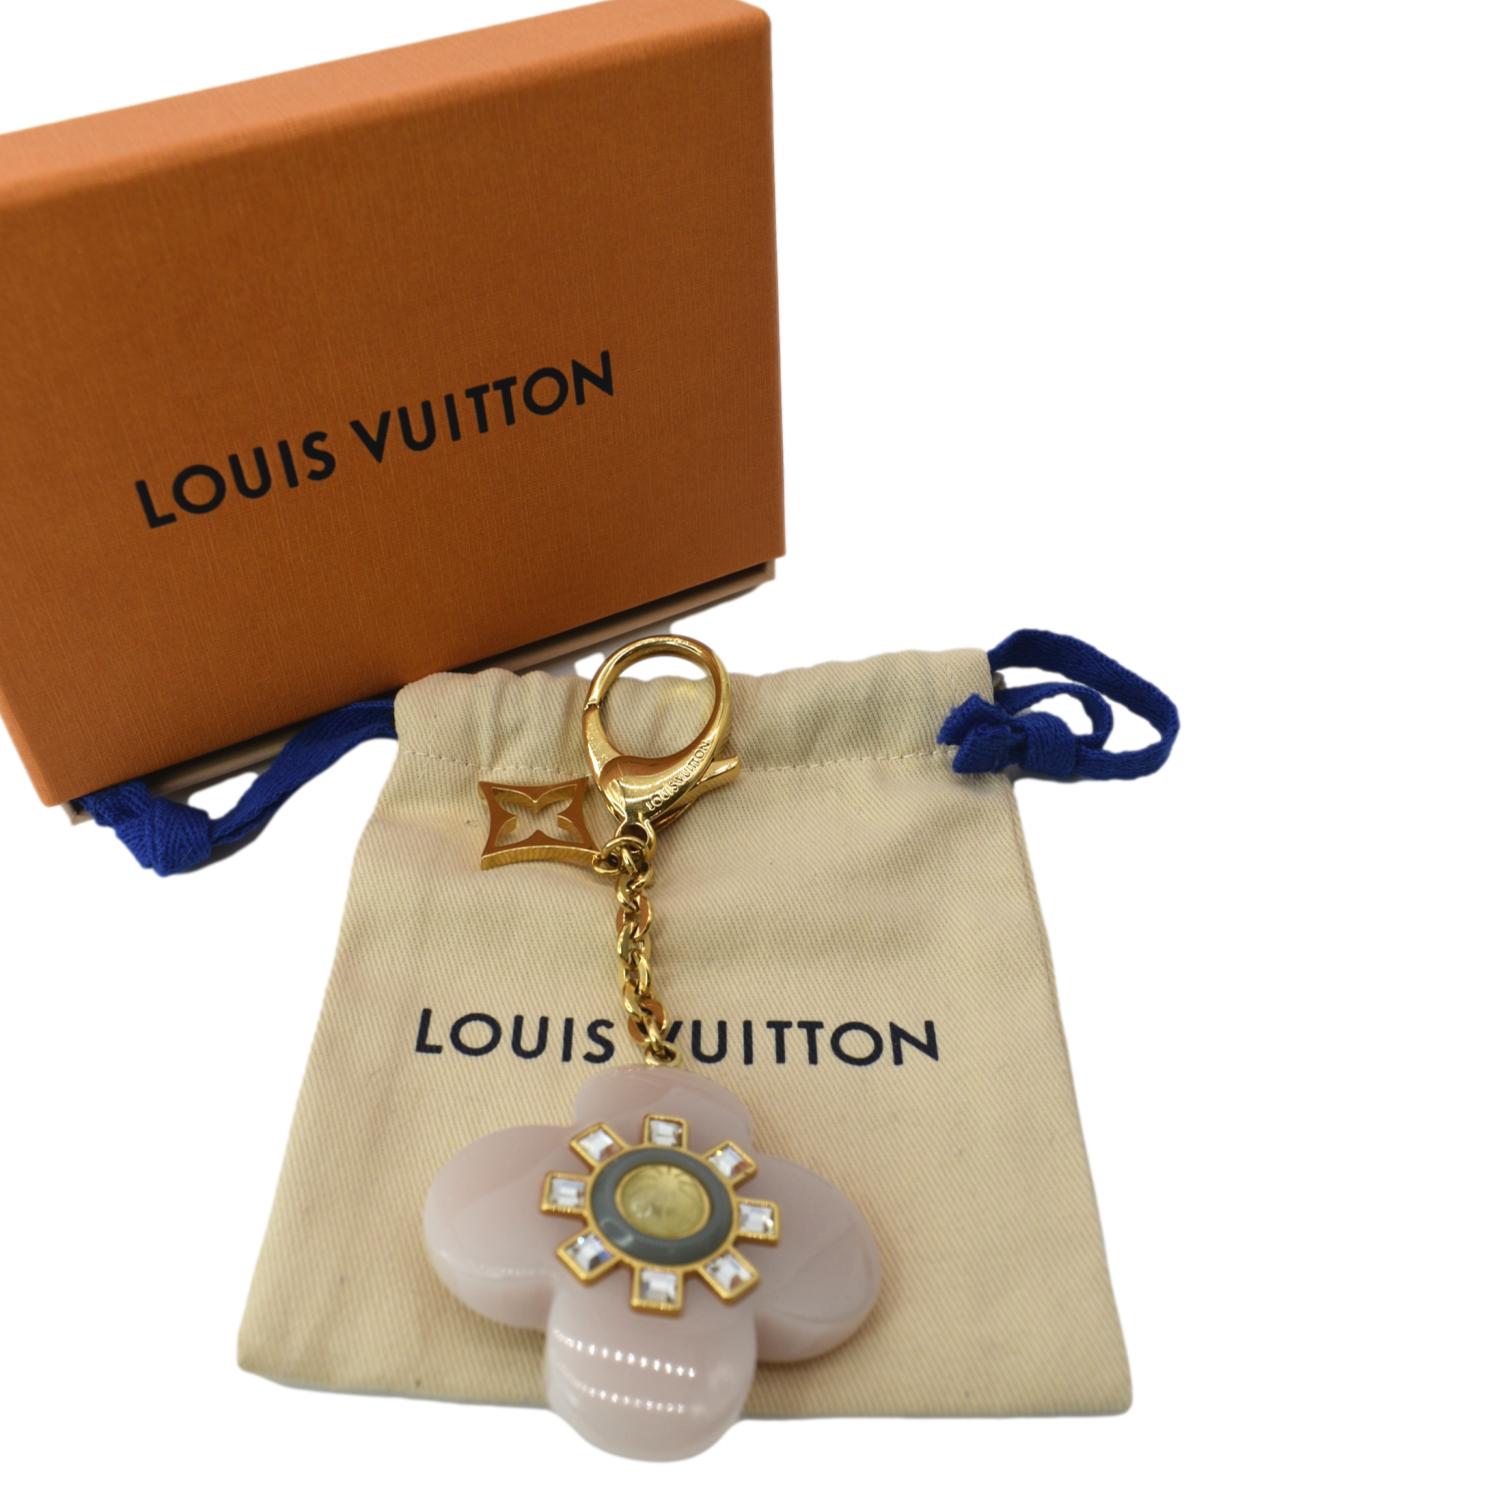 Louis Vuitton Style Double Fleur Earrings